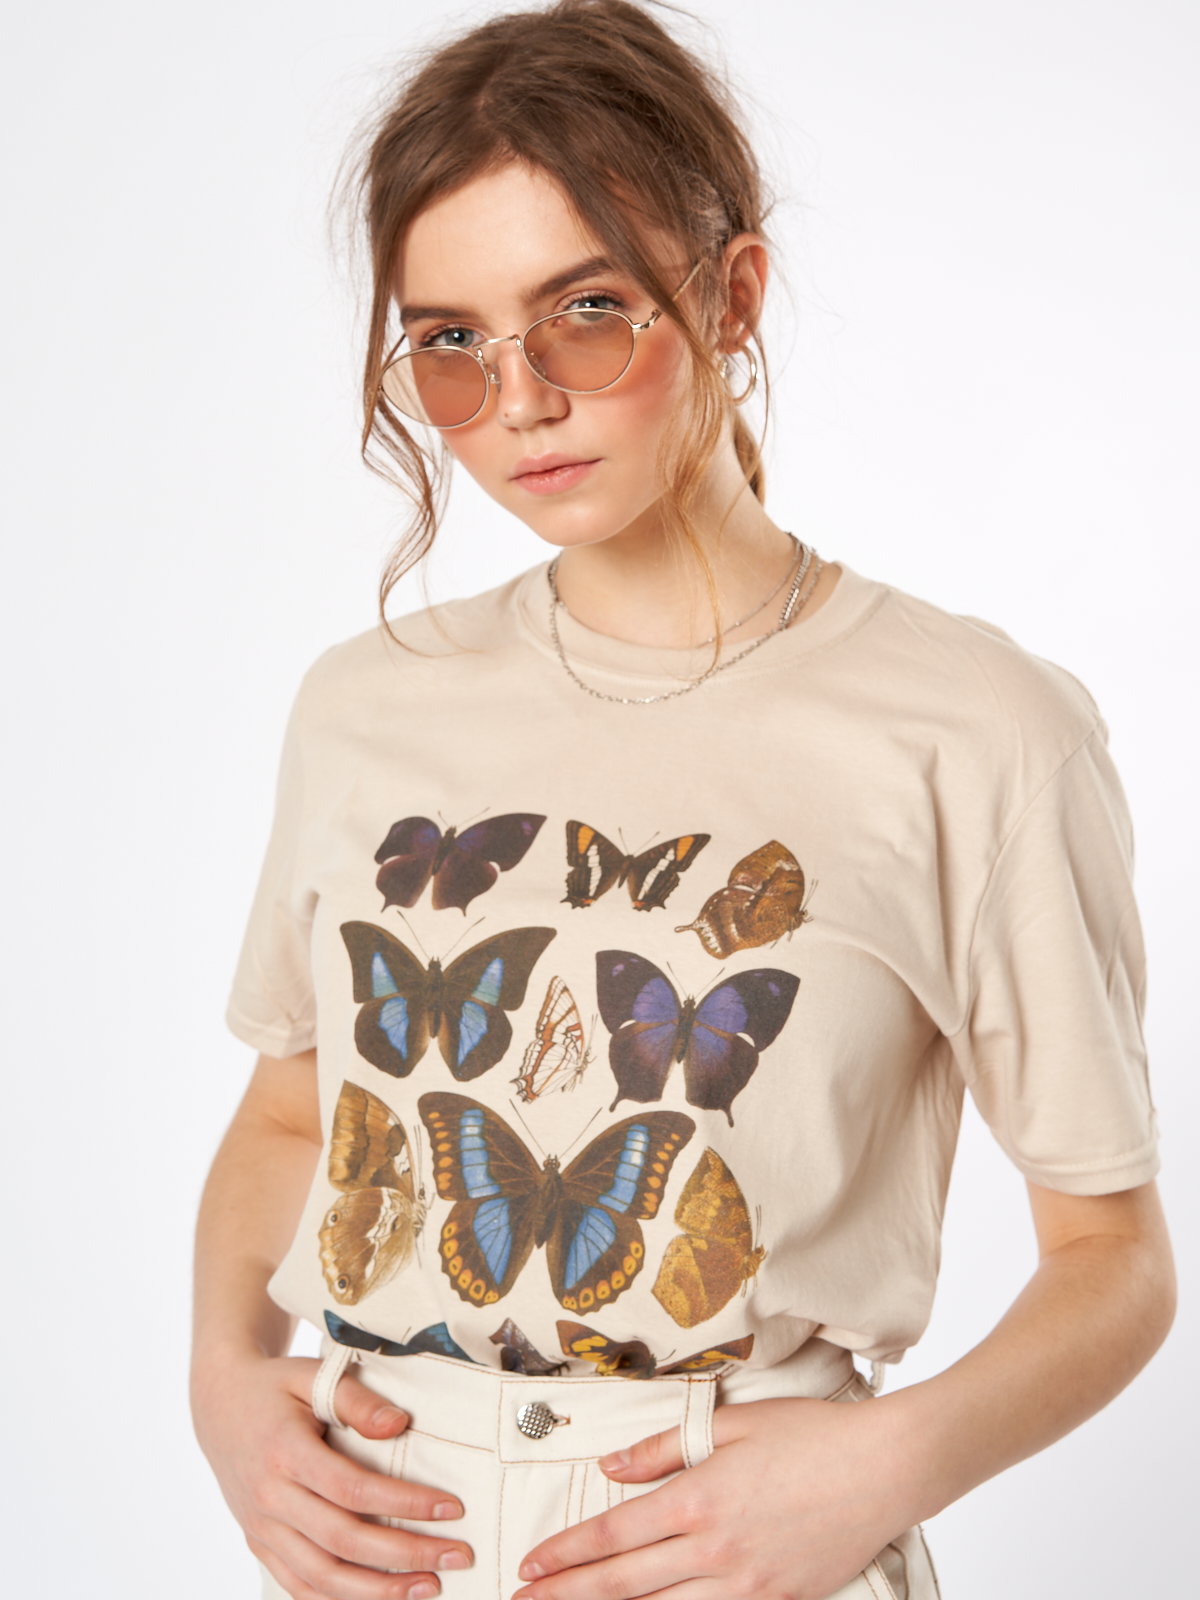 Butterflies Oversized Tee T Shirt Top Womens Ladies Grunge 90s Art ...